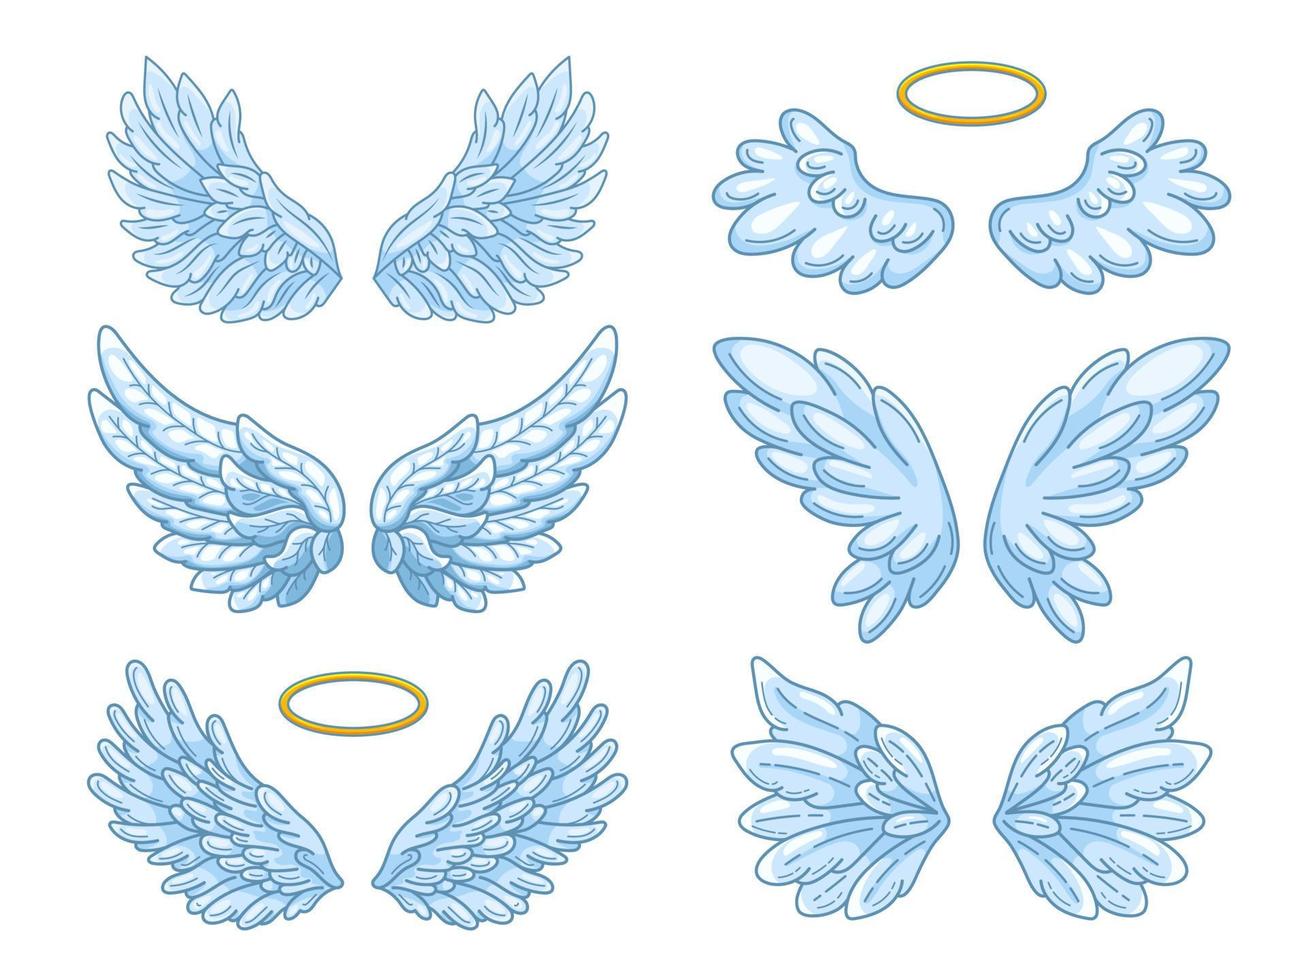 sammlung von weit verbreiteten blauen engelsflügeln mit goldenem halo. Konturzeichnung im modernen Linienstil mit Volumen. vektorillustration lokalisiert auf weiß. vektor